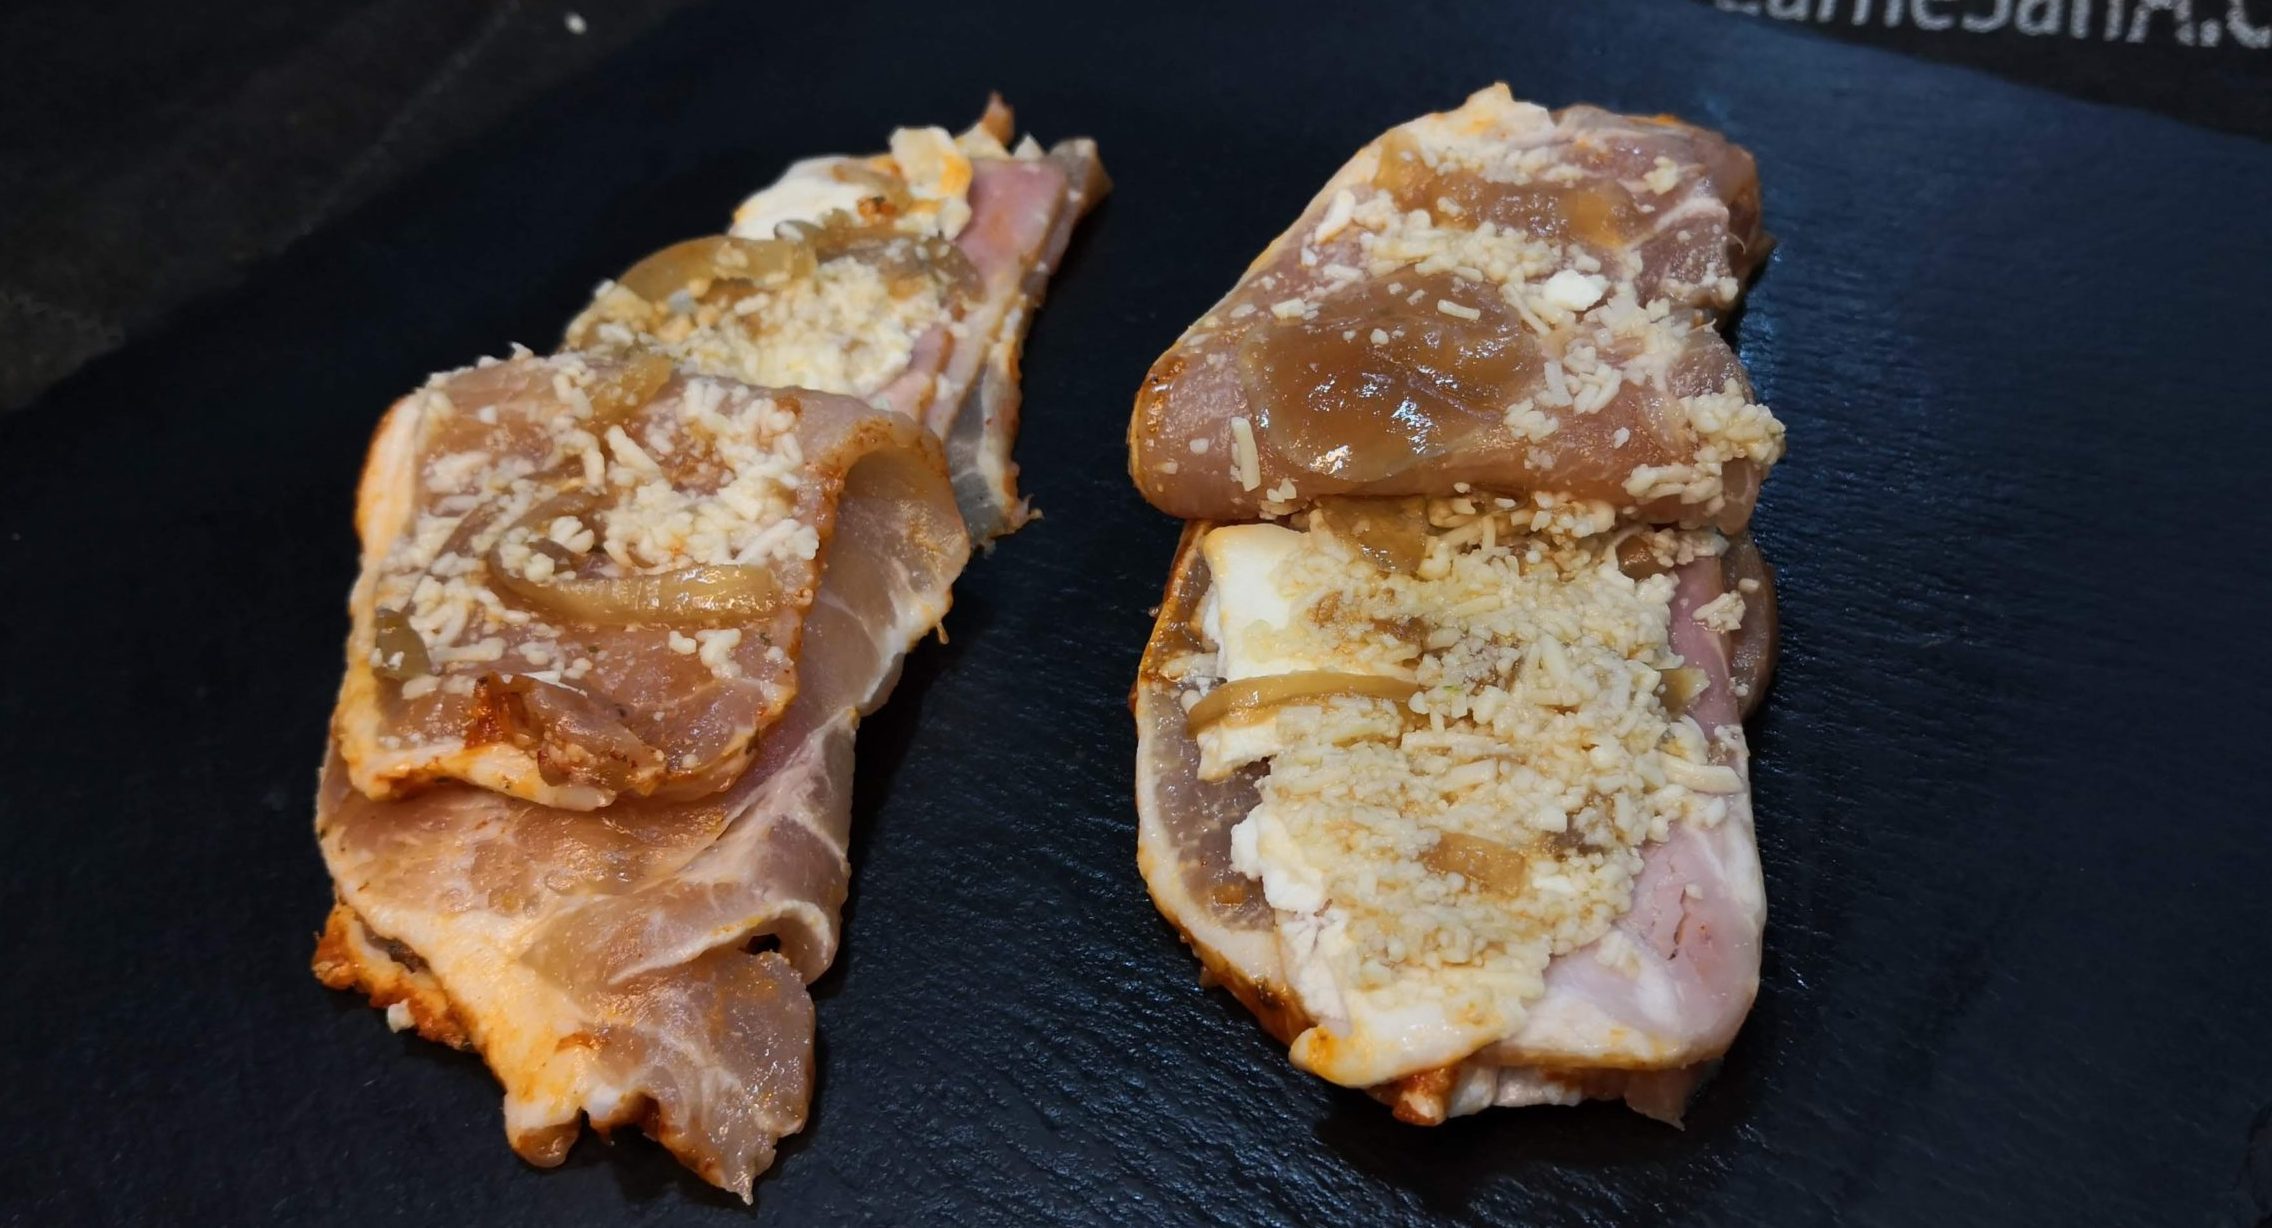 Filete de nuestro lomo casero adobado, relleno de rulo de cabra, cebolla caramelizada y bacon